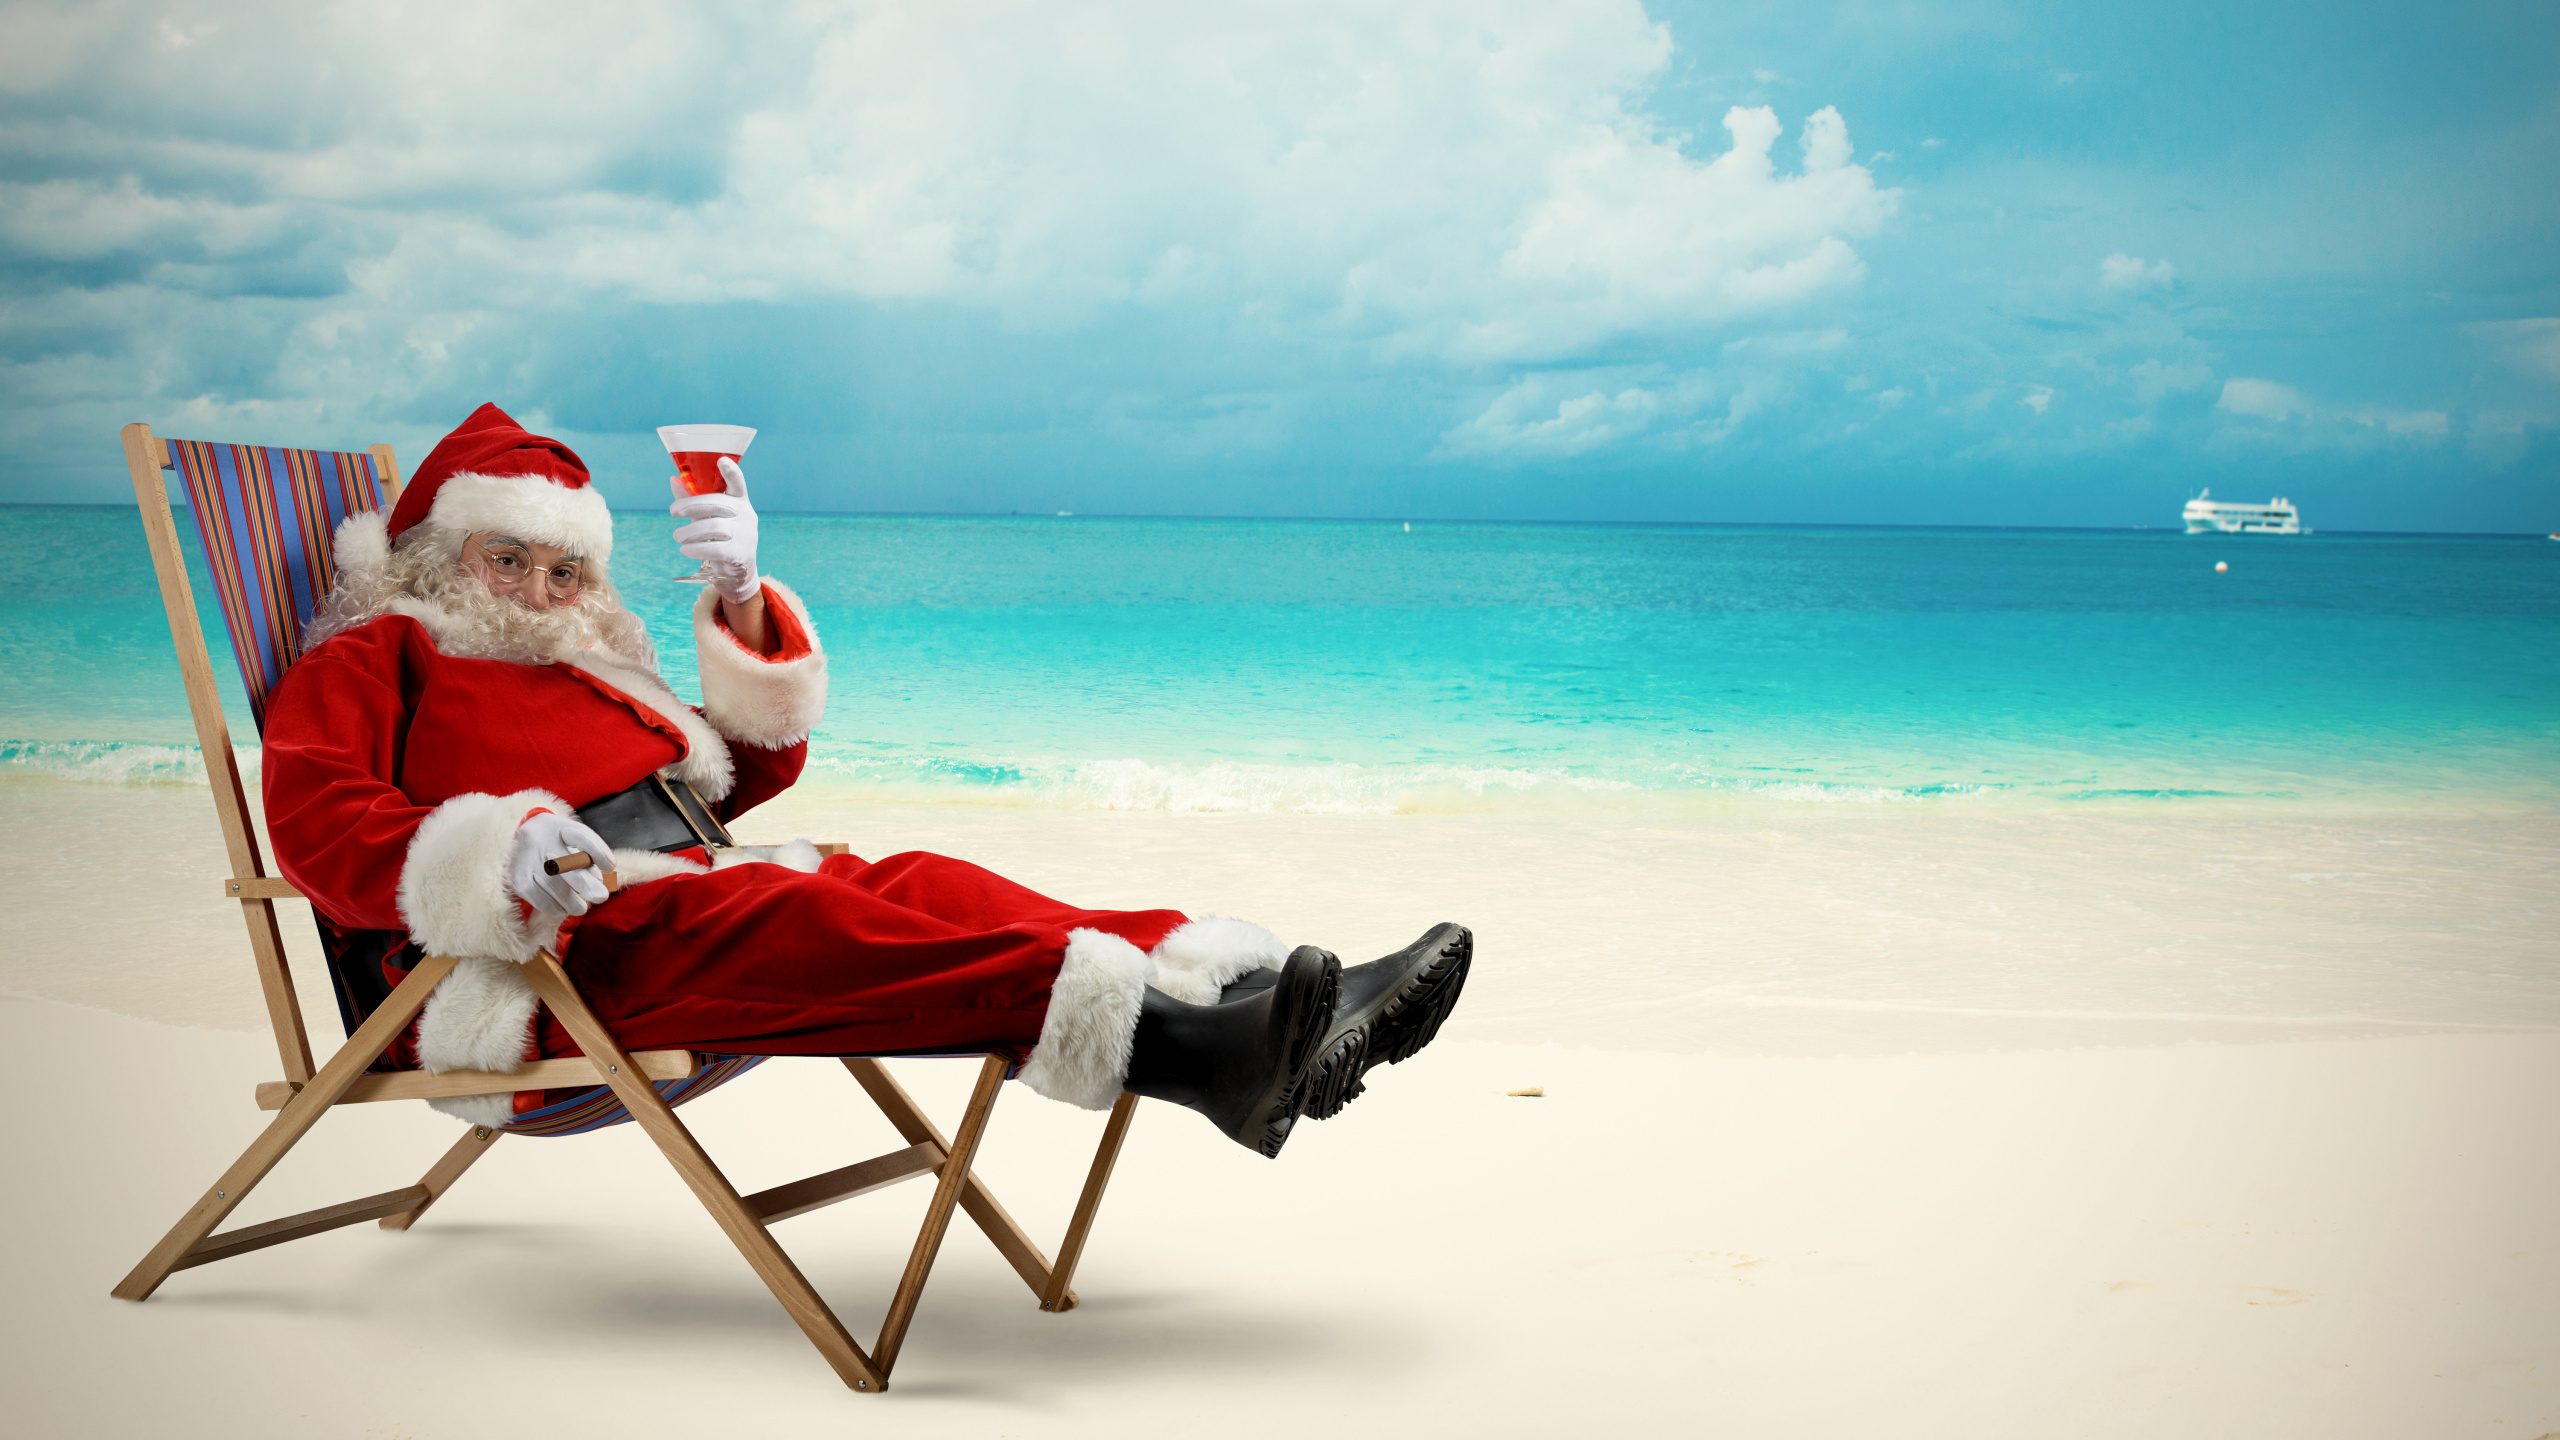 圣诞老人, 圣诞节那天, 大海, 度假, 海洋 壁纸 2560x1440 允许